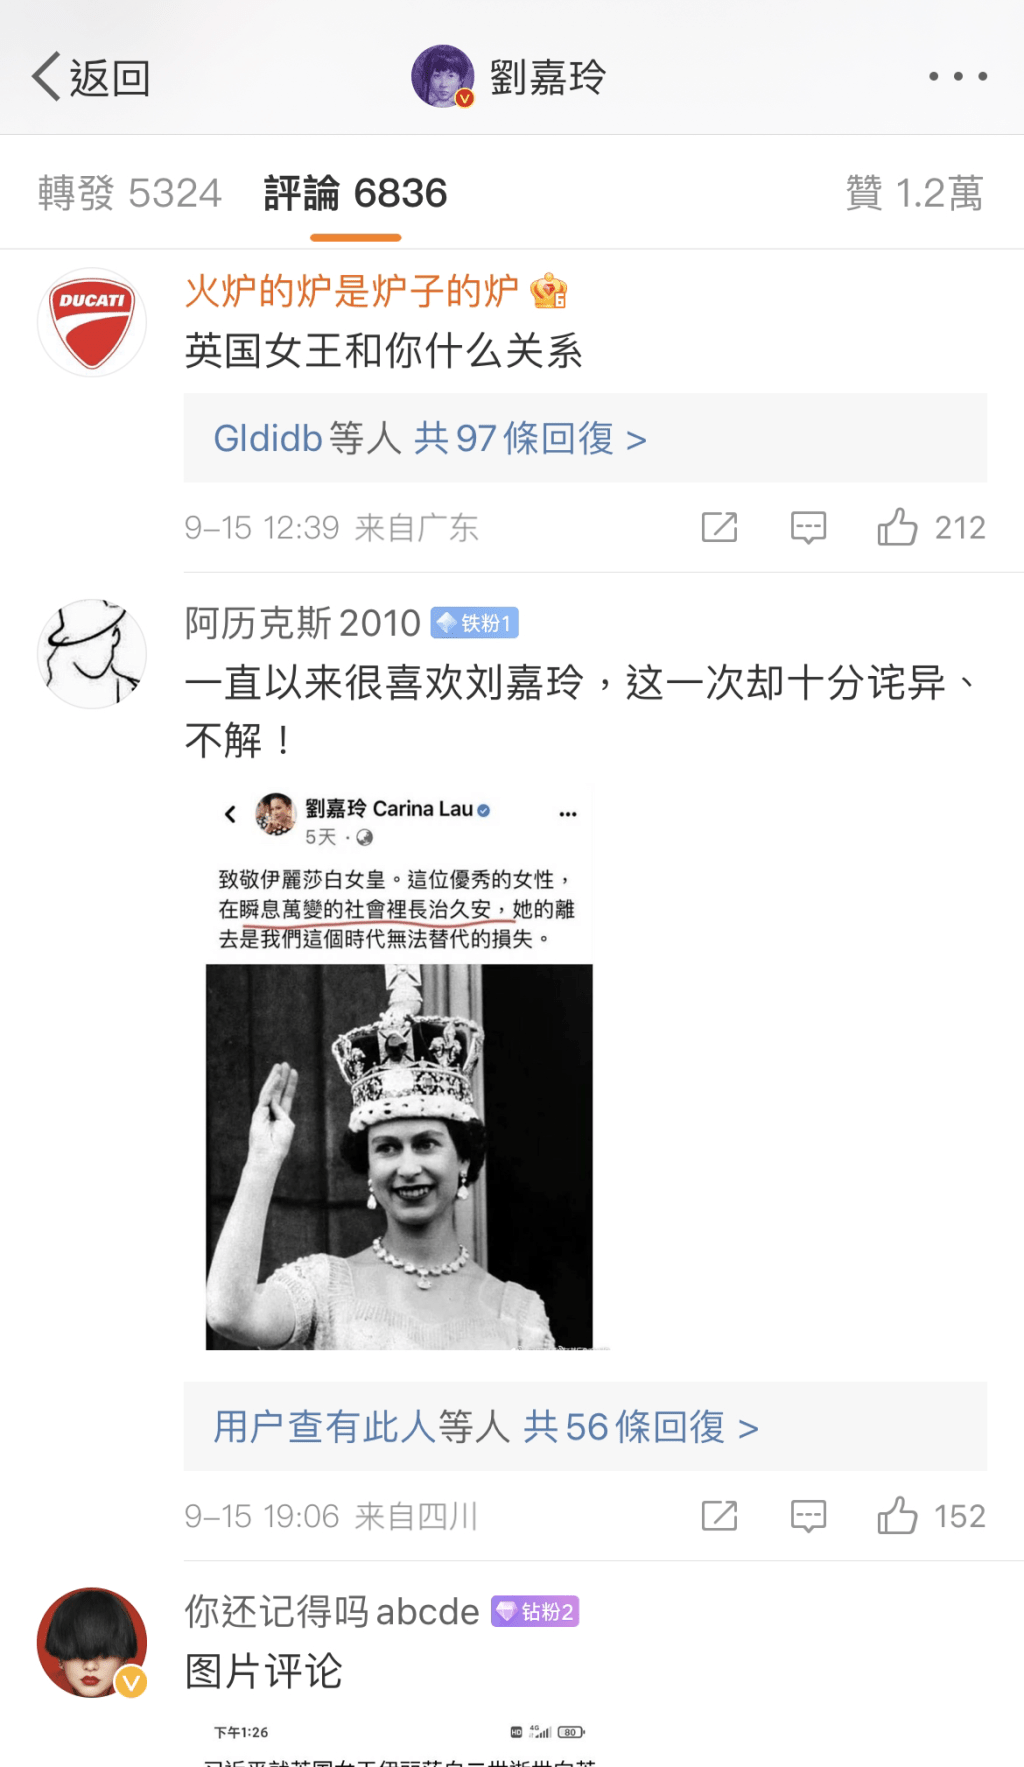 大批內地網民鬧劉嘉玲悼念英女皇逝世。